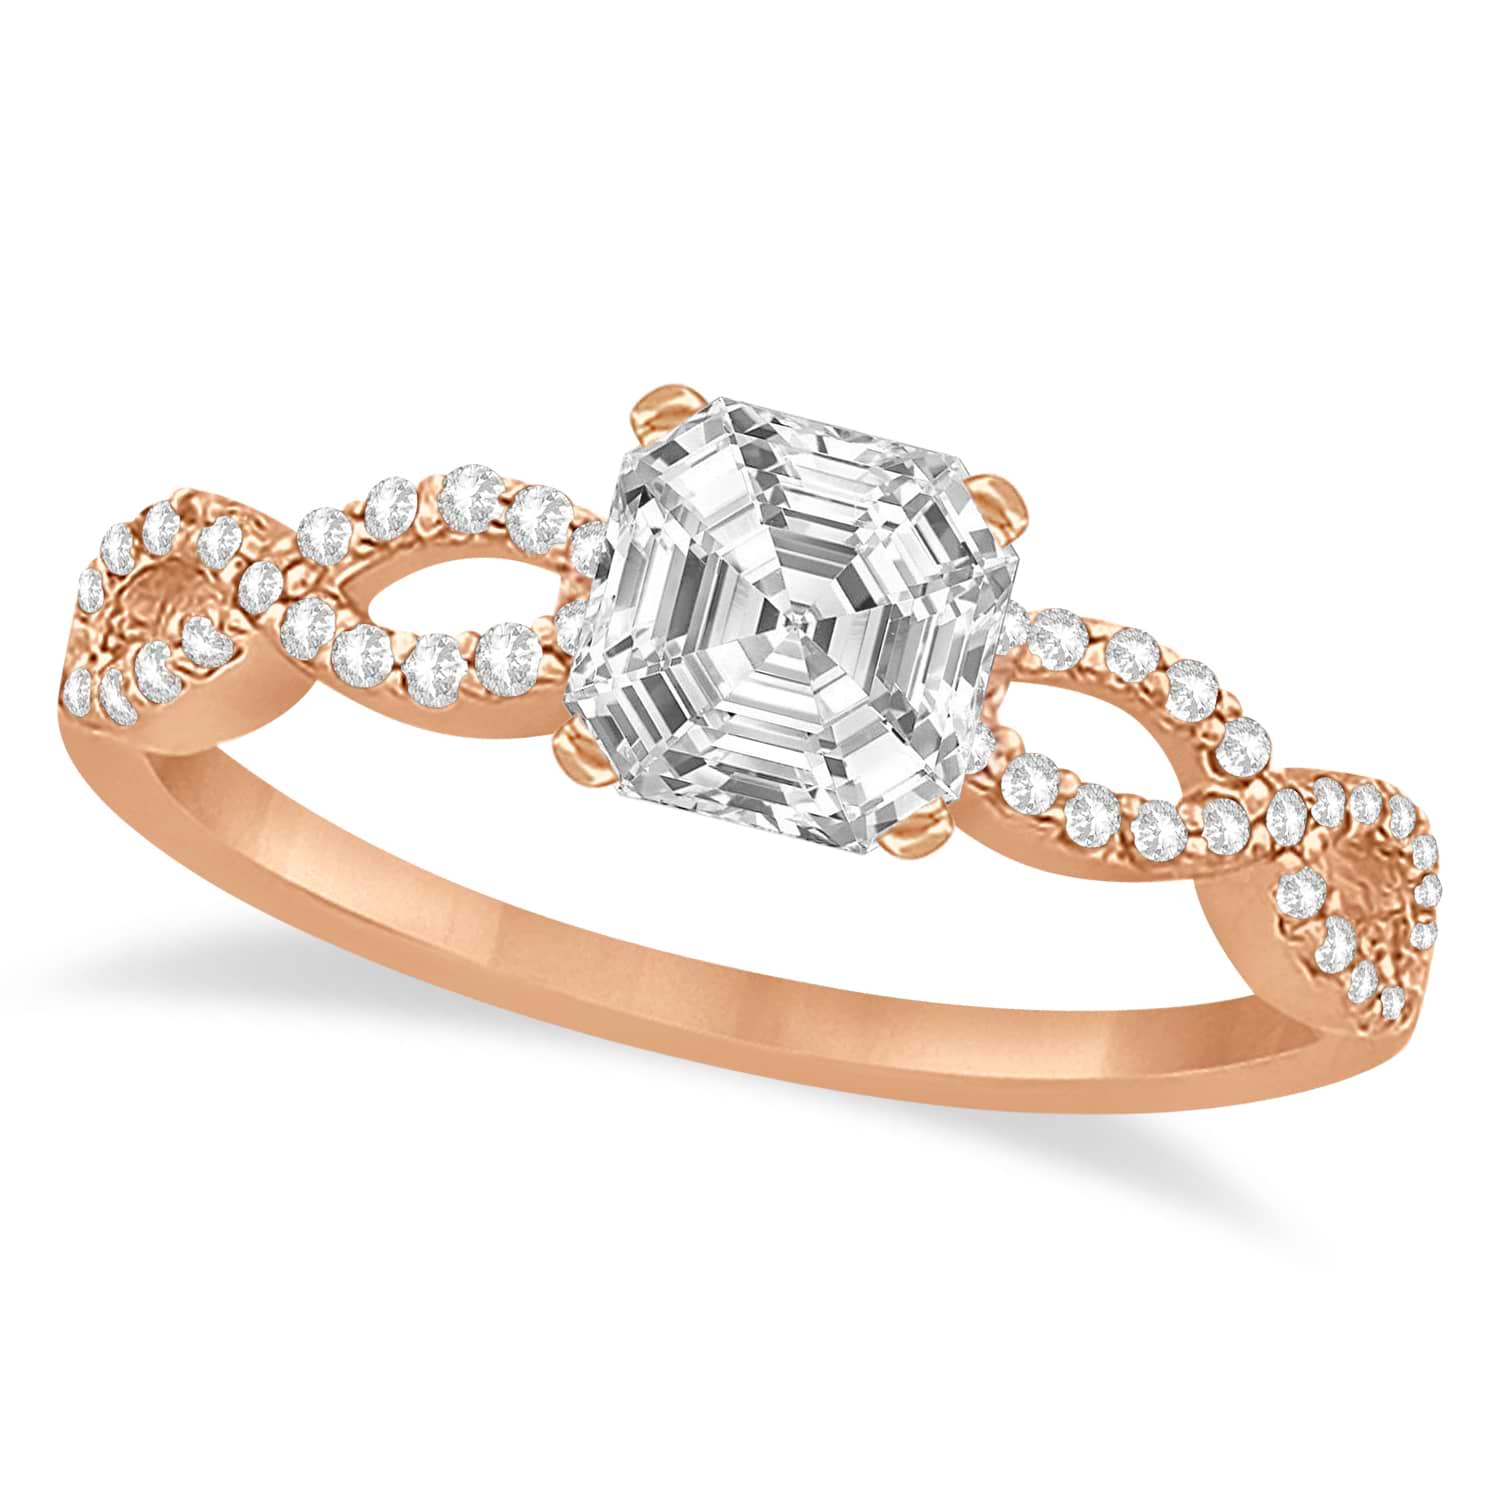 Infinity Asscher-Cut Lab Grown Diamond Engagement Ring 18k Rose Gold (0.50ct)